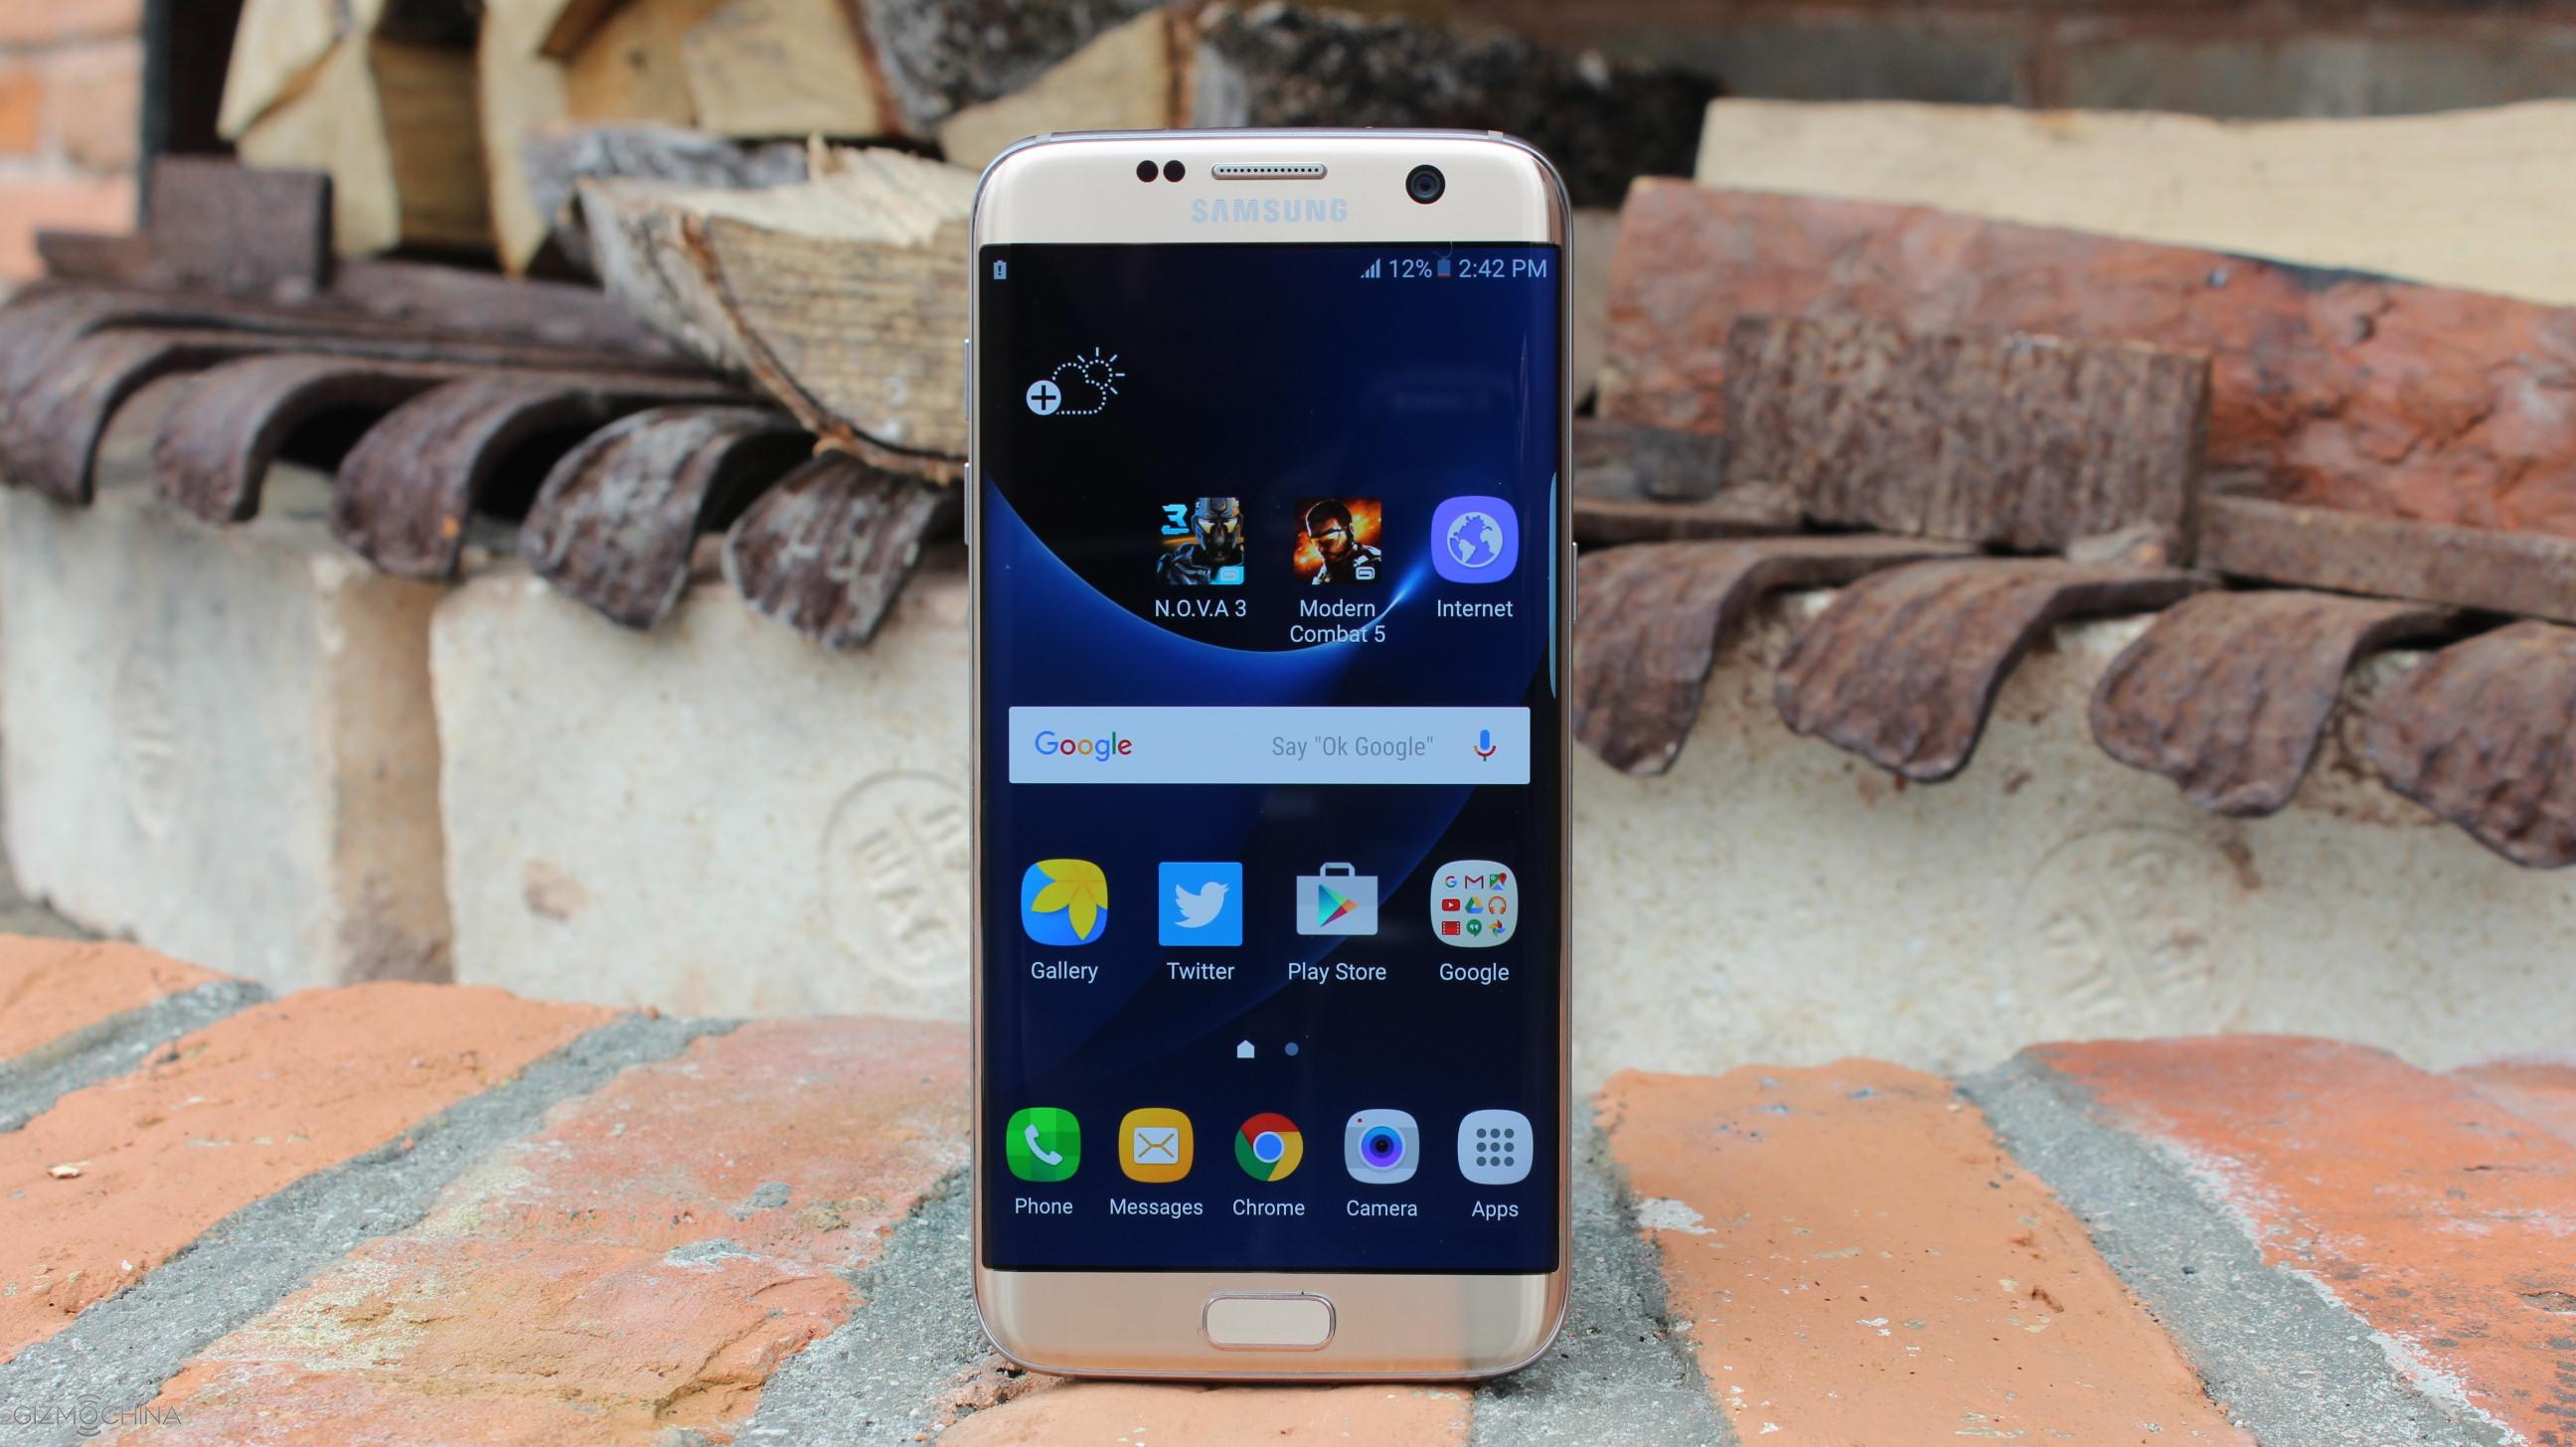 Bij elkaar passen lastig viering Samsung Galaxy S7 Edge Review: The Best Smartphone Ever? - Gizmochina